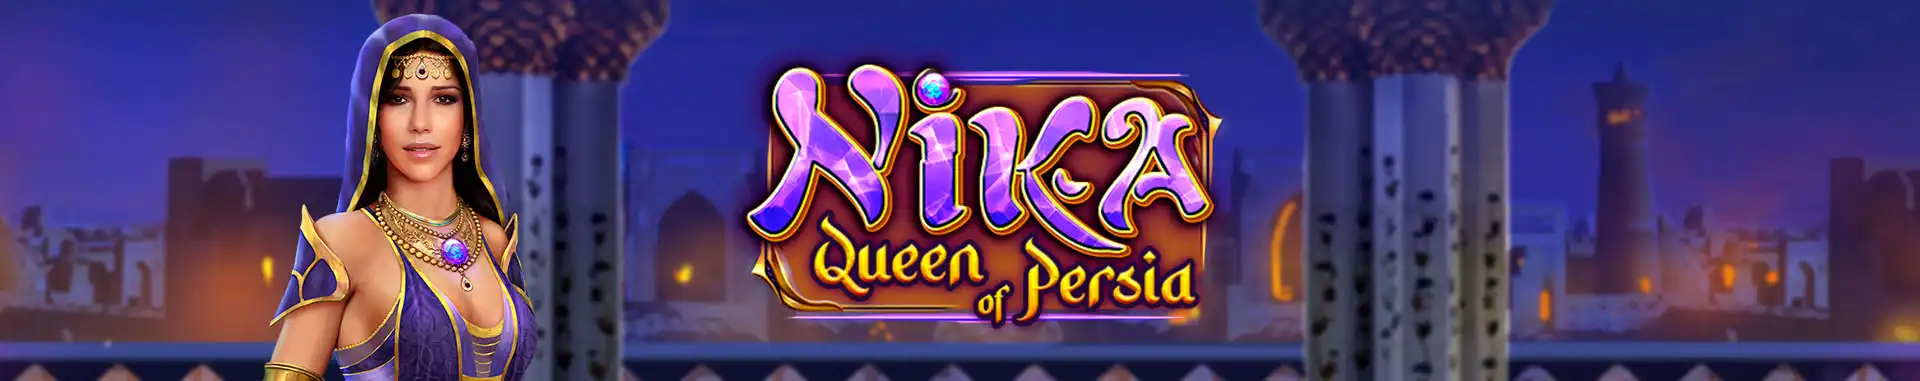 Tragaperras online Nika Queen of Persia